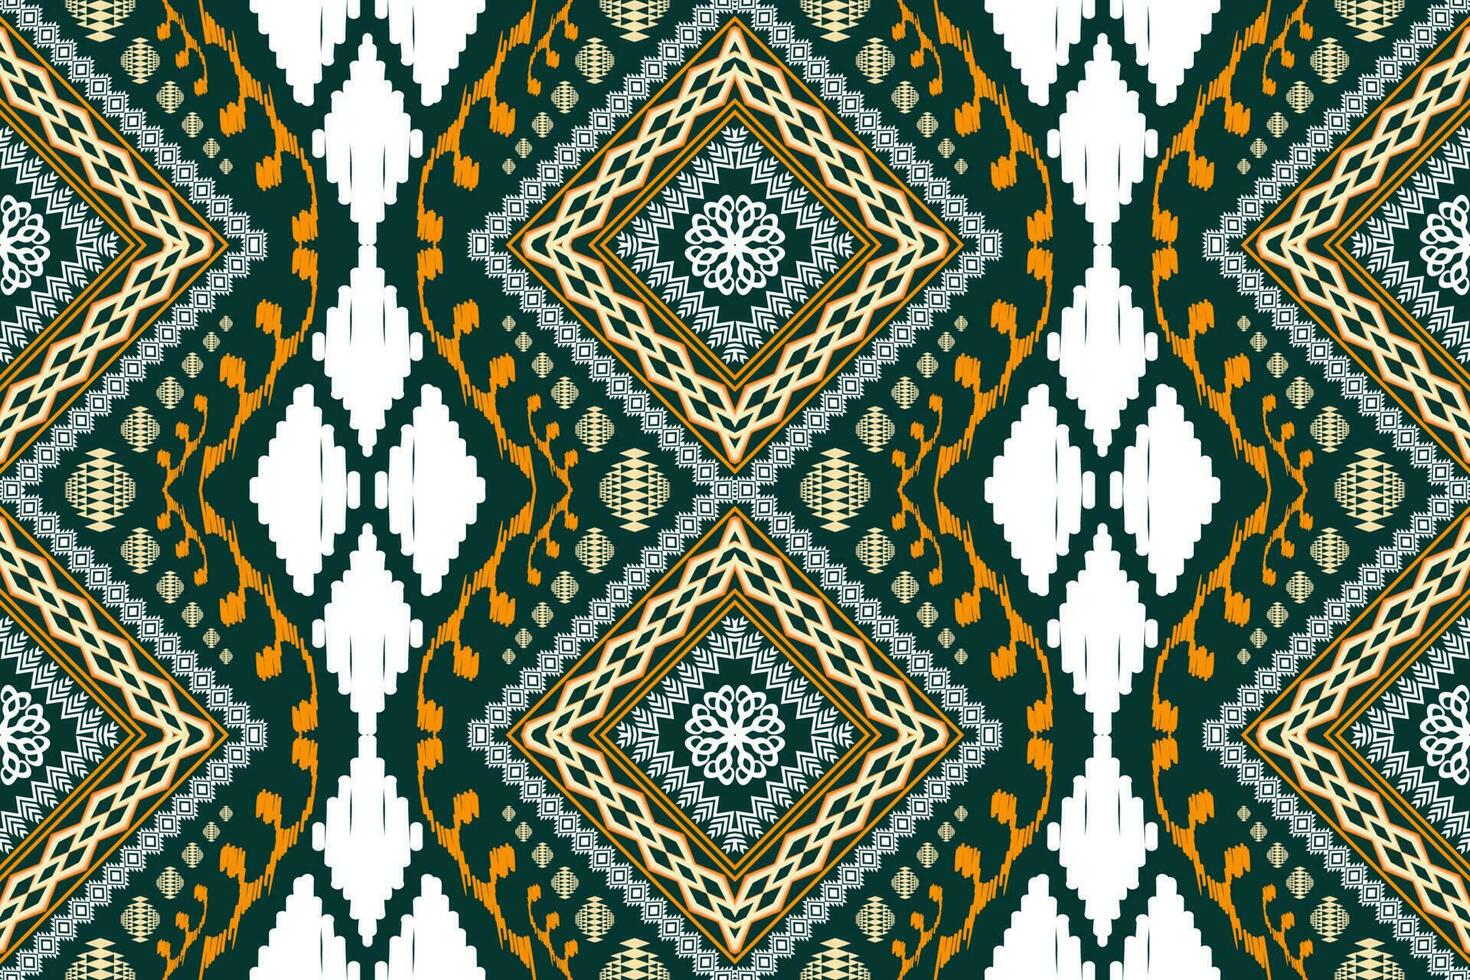 étnico figura asteca bordado estilo. geométrico ikat oriental tradicional arte padrão.design para étnico plano de fundo,papel de parede,moda,vestuário,embrulho,tecido,elemento,sarong,gráfico ilustração vetor